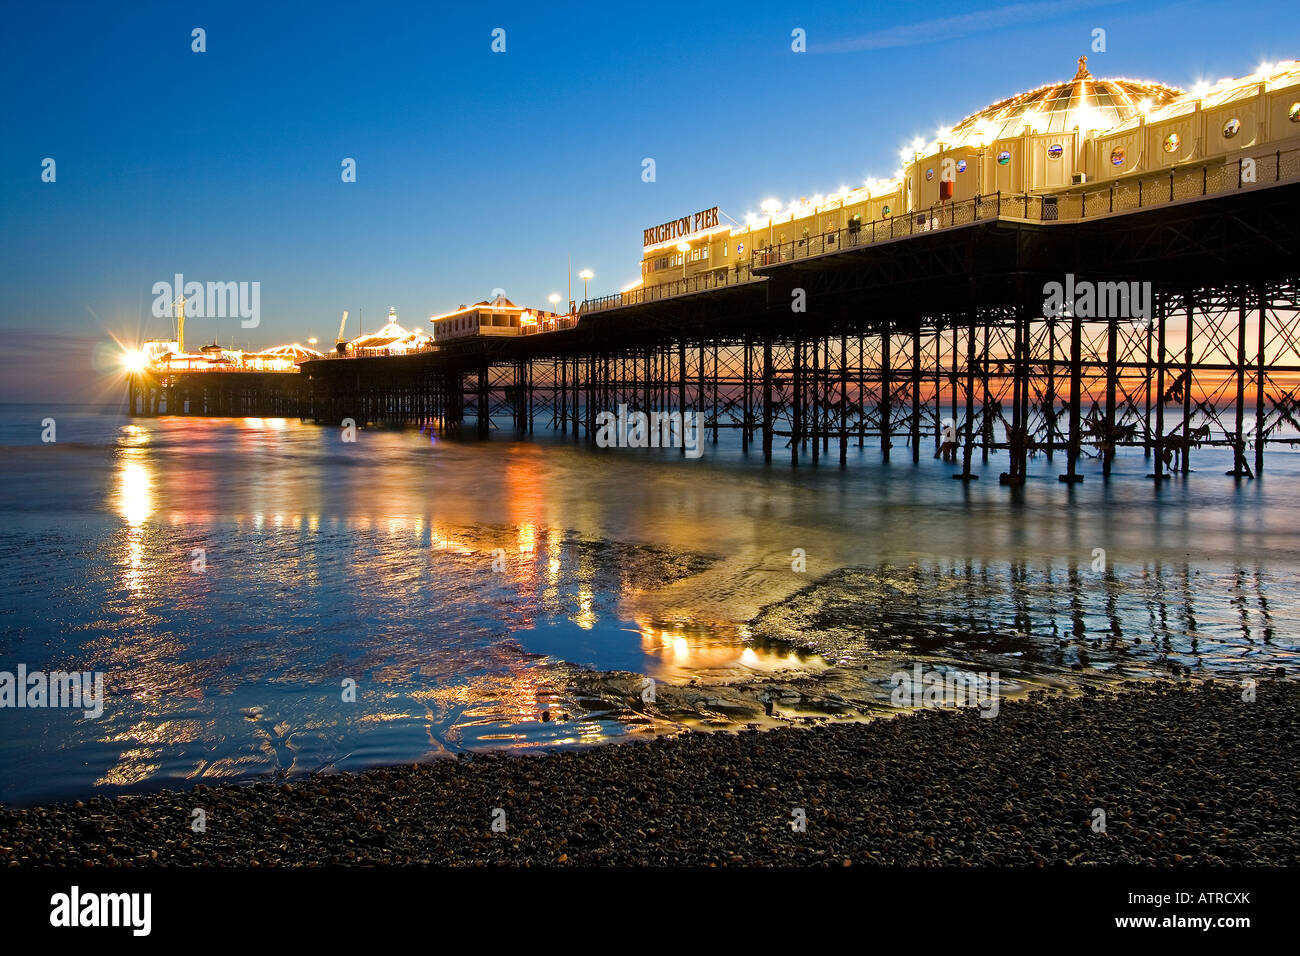 Brighton Pier con poca luz al atardecer con luces de colores en el embarcadero reflejando en el mar y la playa de guijarros en primer plano Foto de stock